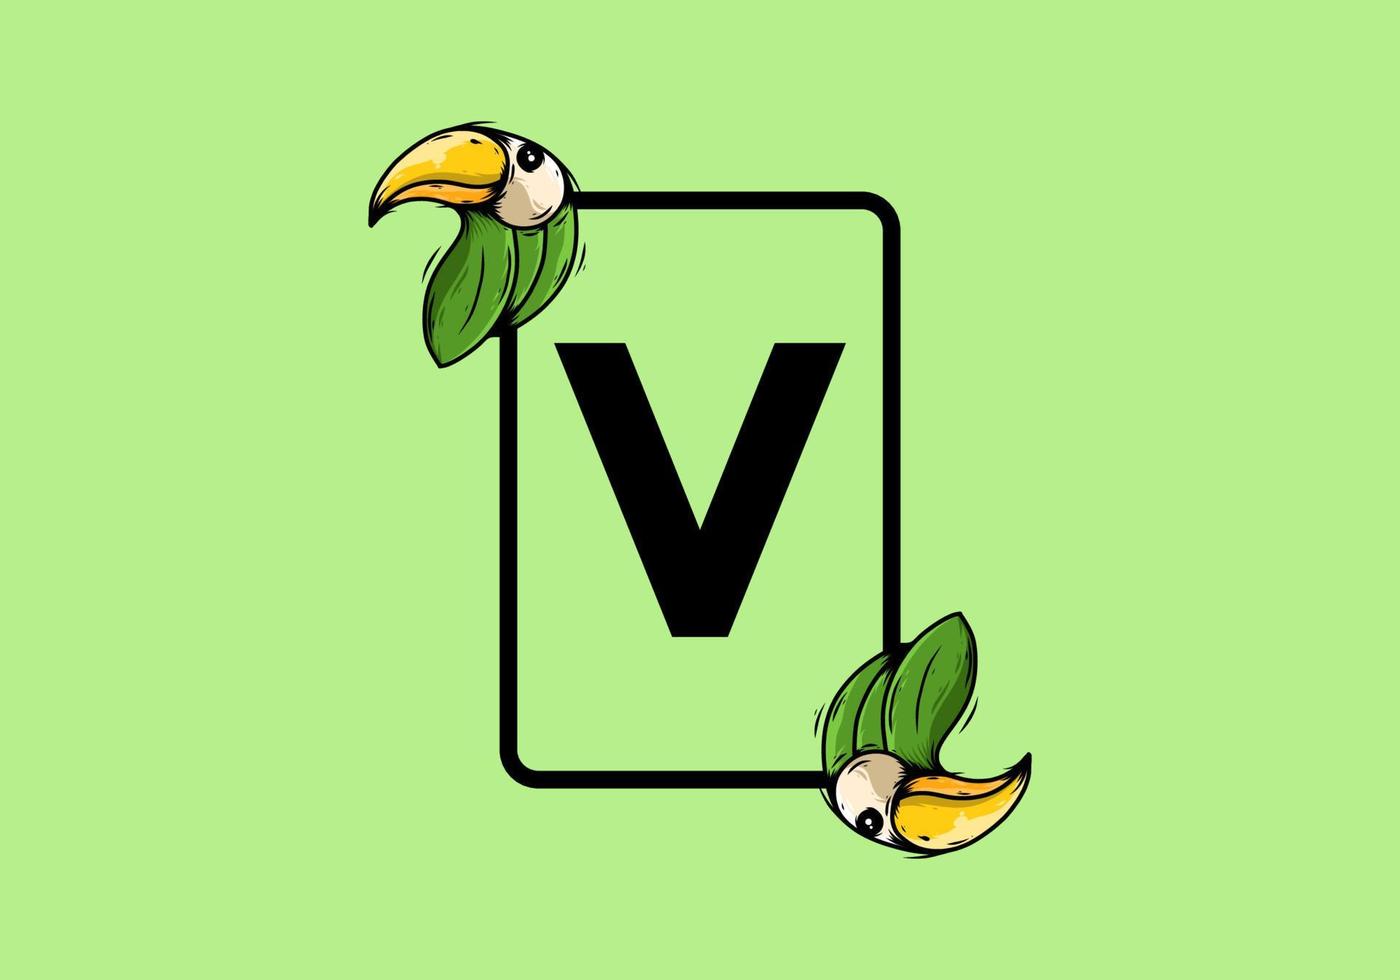 groene vogel met v beginletter vector